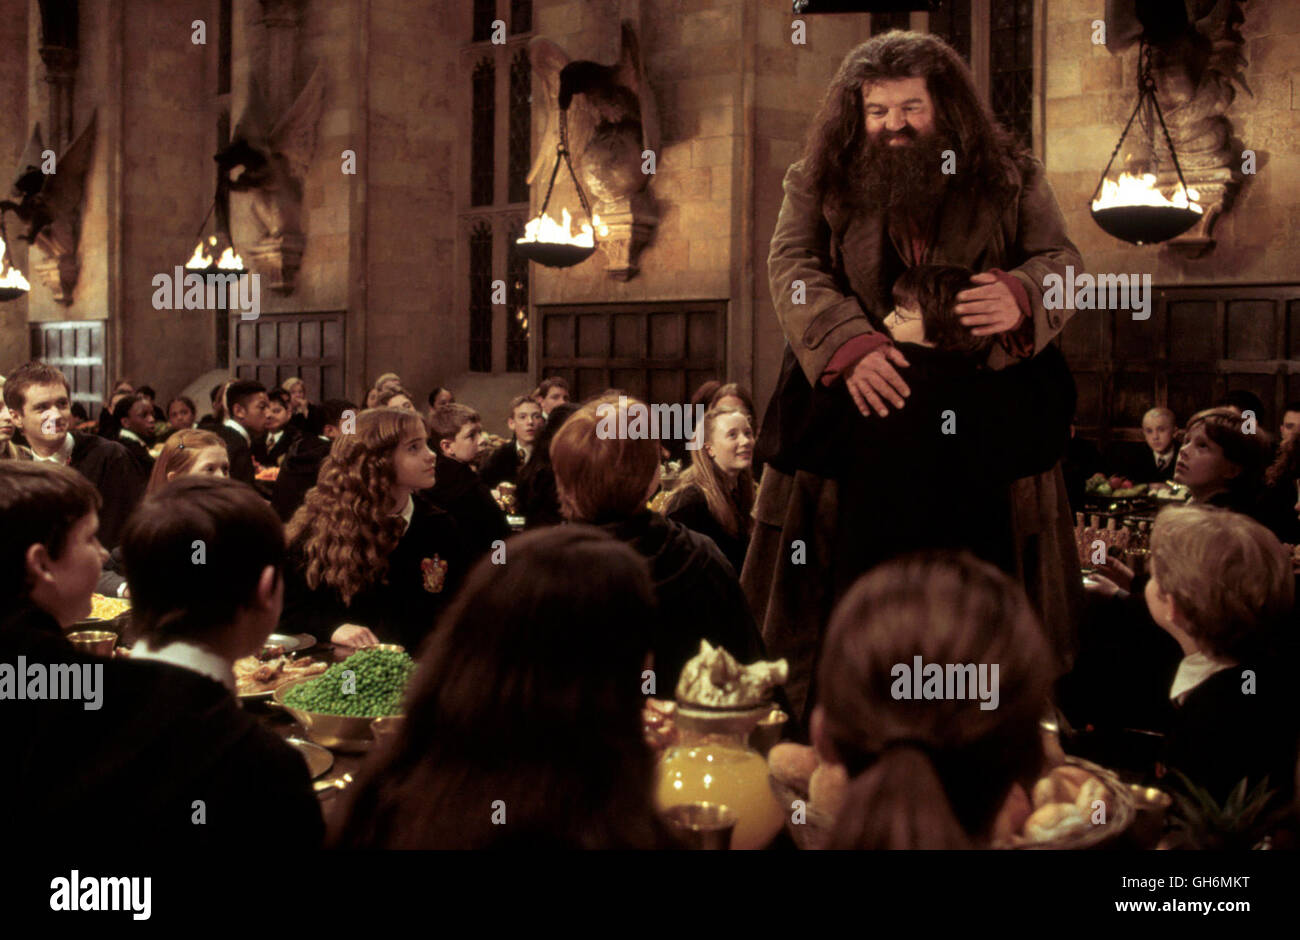 Hagrid harry potter fotografías e imágenes de alta resolución - Alamy